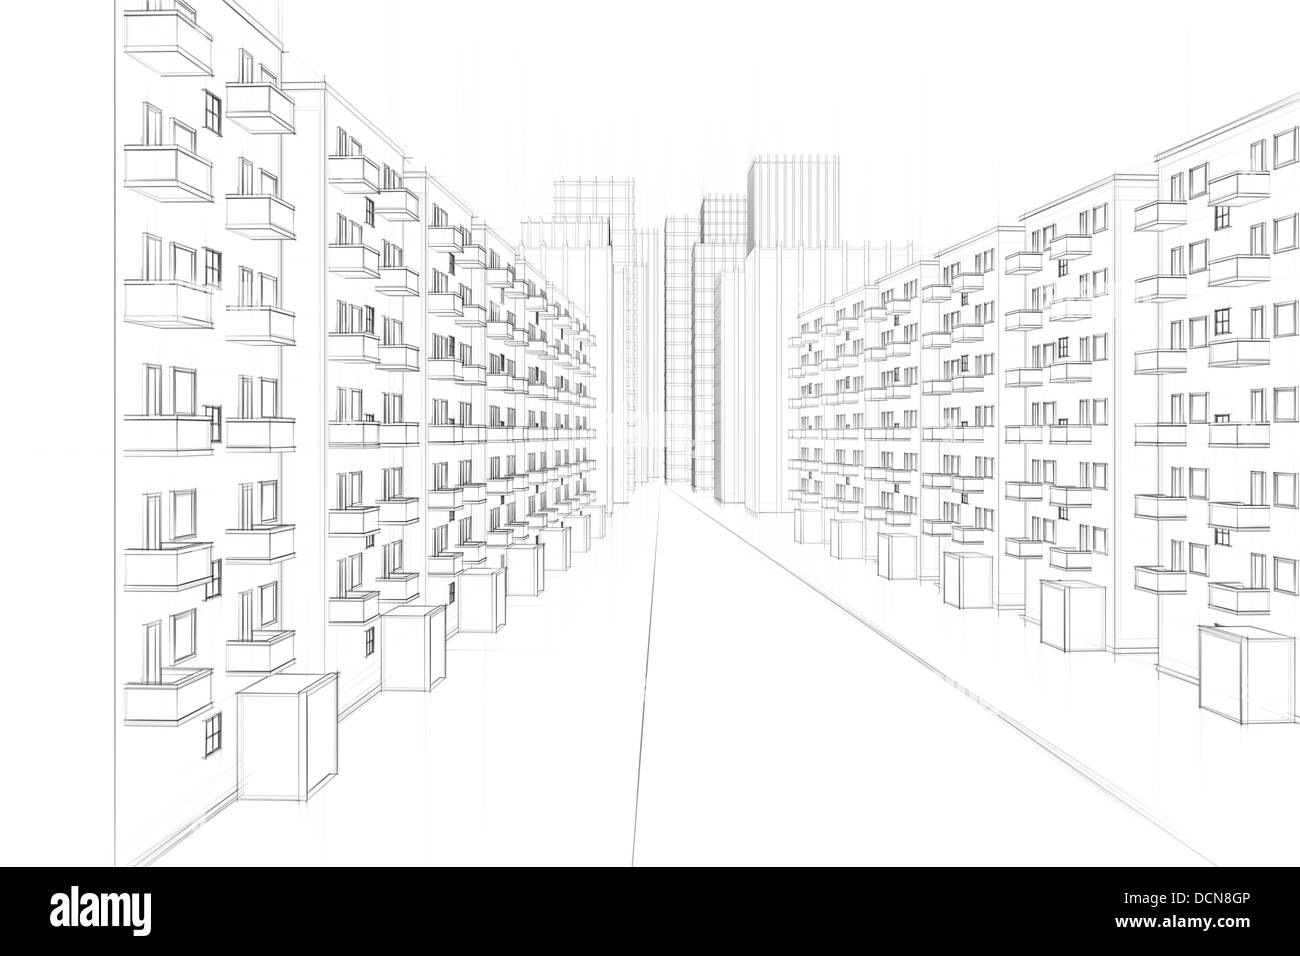 Disegno di un urbano strada residenziale con blocchi di appartamenti Foto Stock